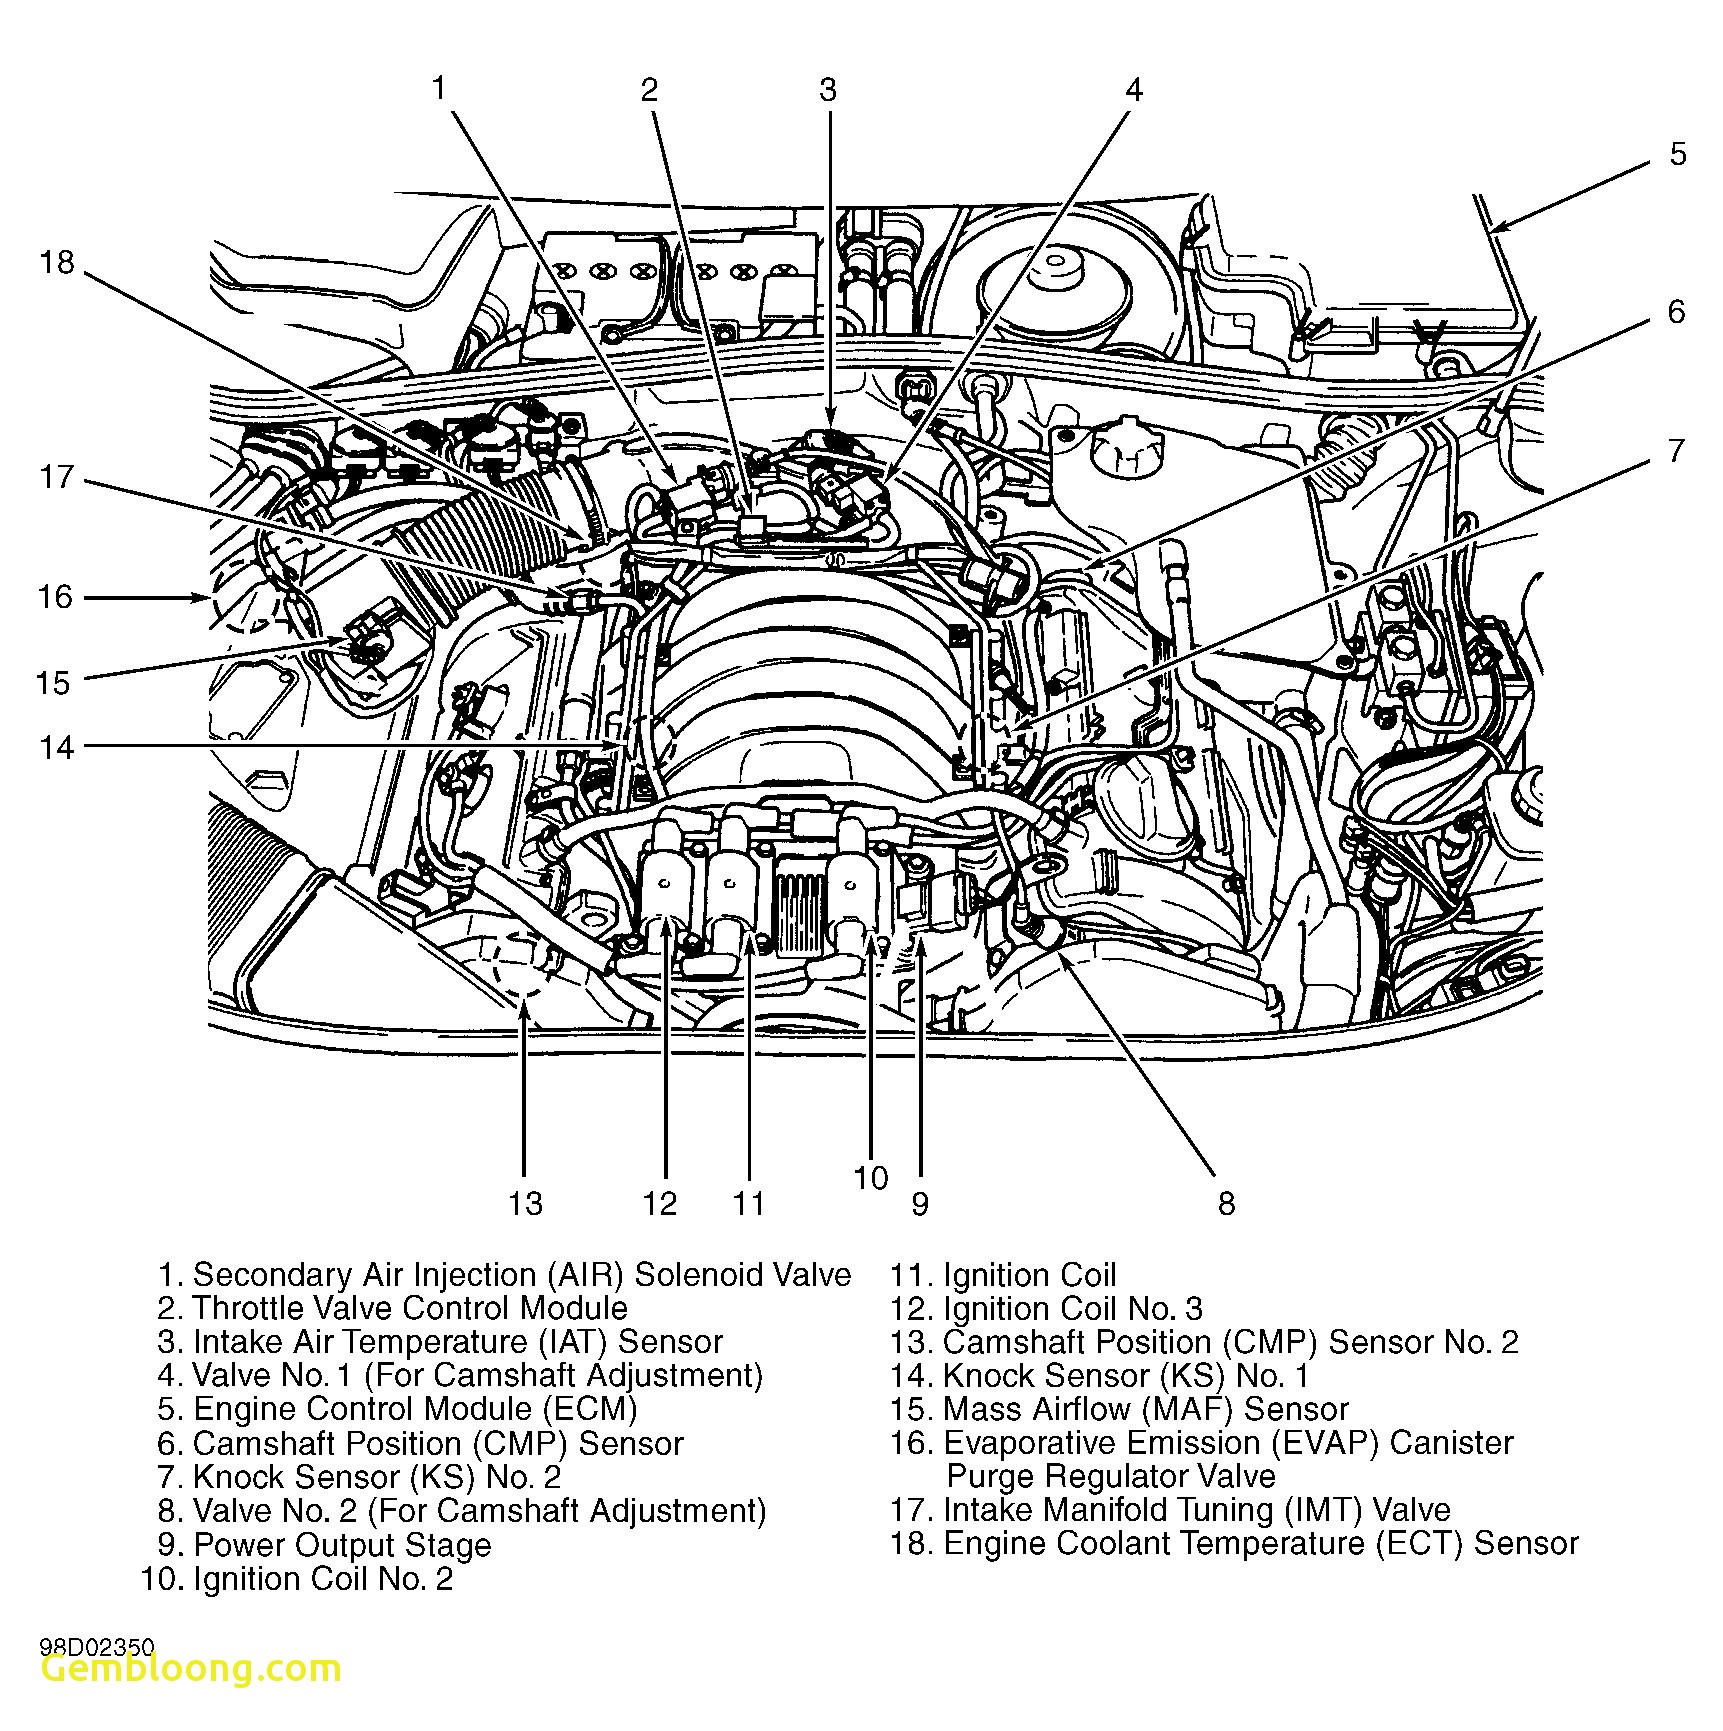 3100 V6 Engine Diagram Mitsubishi Engine Diagram 3 5l Cable Diagram Wiring Diagram toolbox Of 3100 V6 Engine Diagram